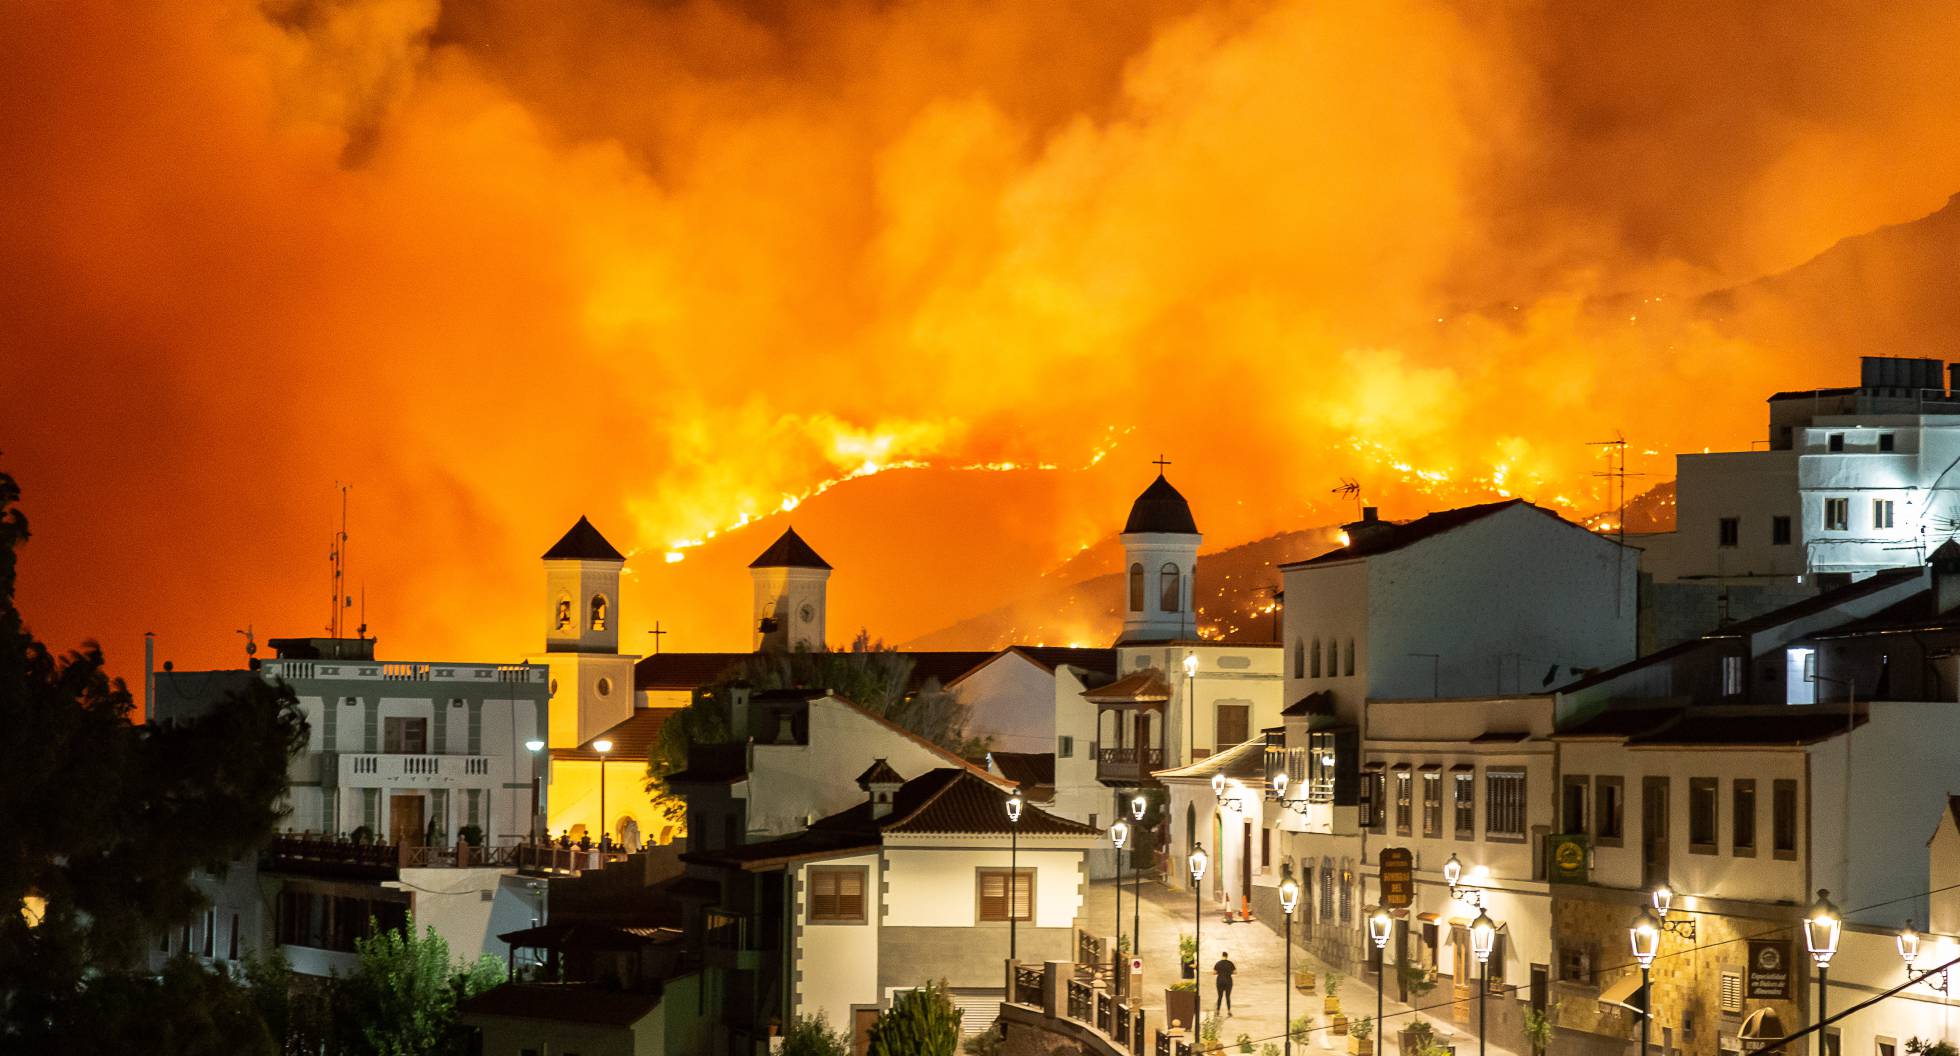 De tormenta llenar Tomar un baño Fotos: El incendio en Gran Canaria, en imágenes | España | EL PAÍS